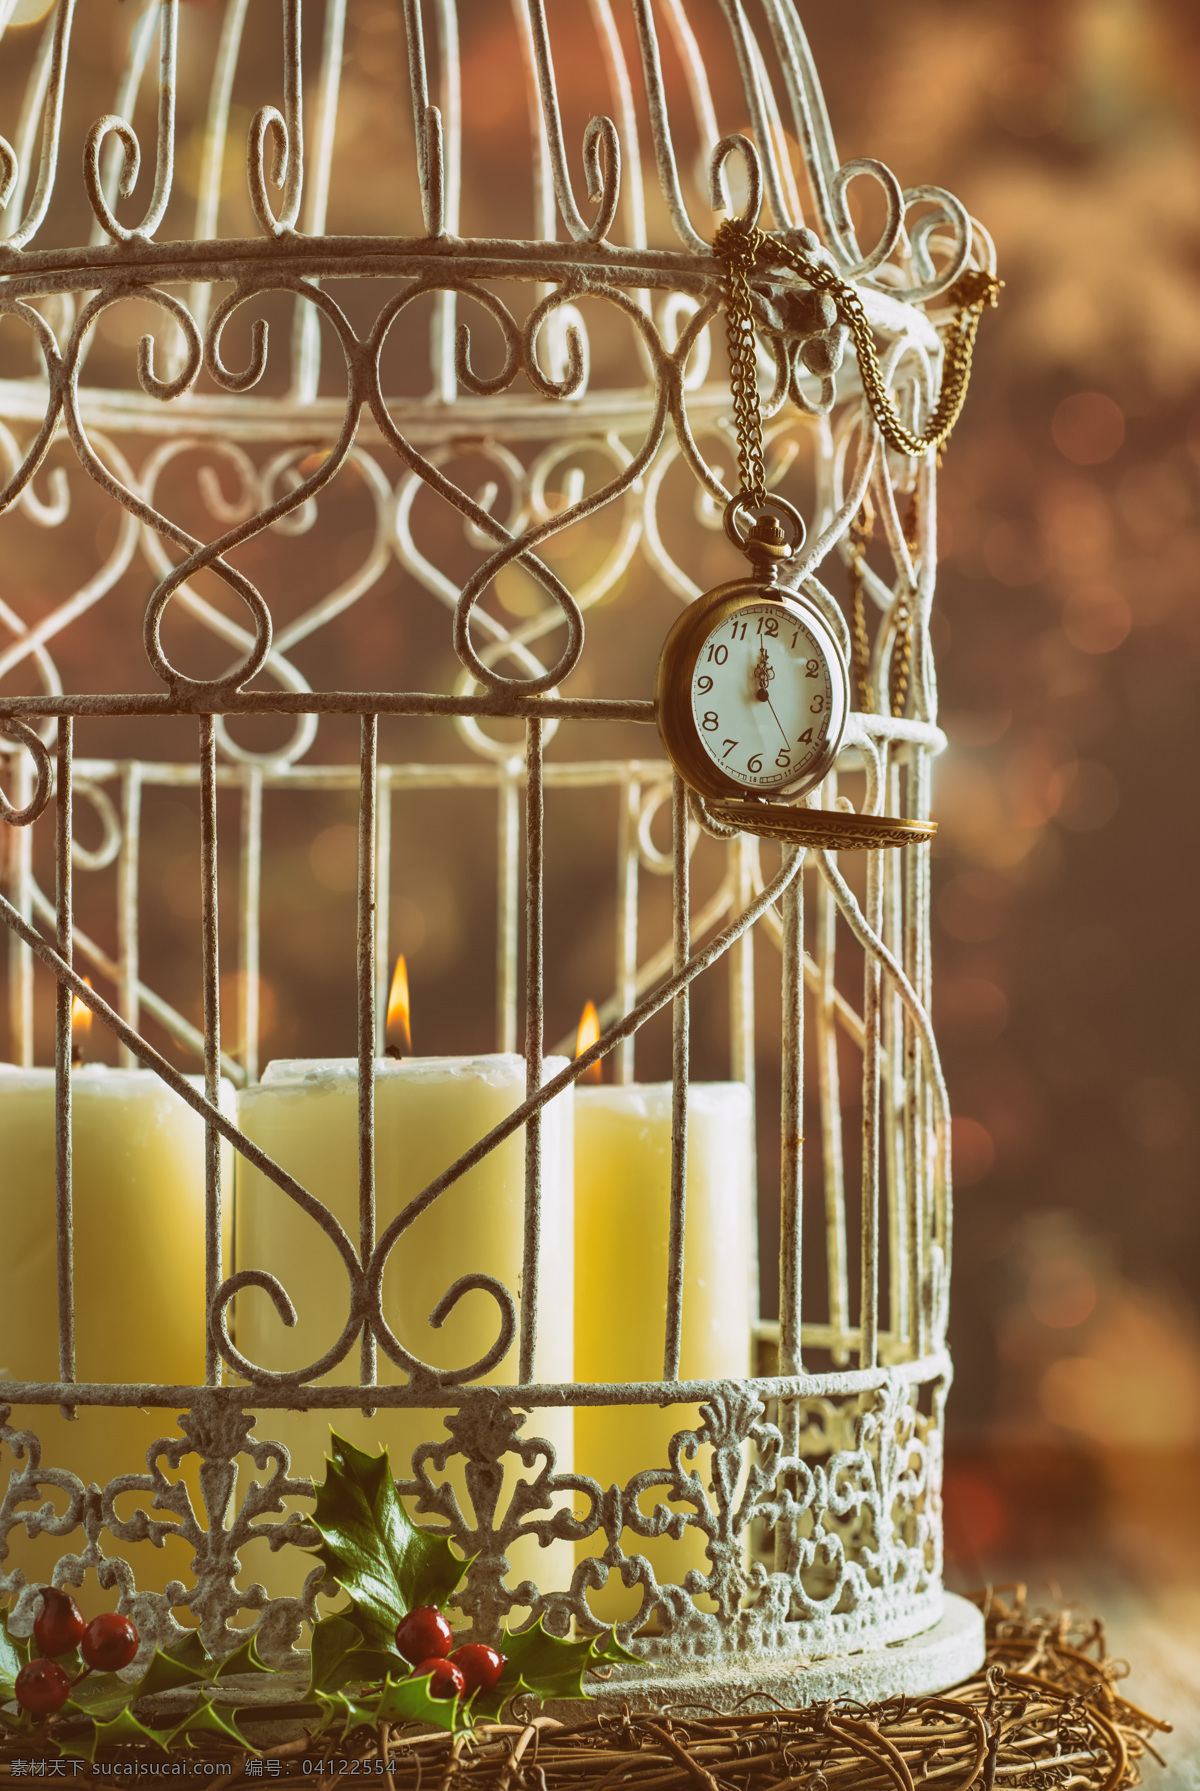 鸟笼里的蜡烛 静物 鸟笼 浆果 怀表 蜡烛 其他类别 生活百科 棕色